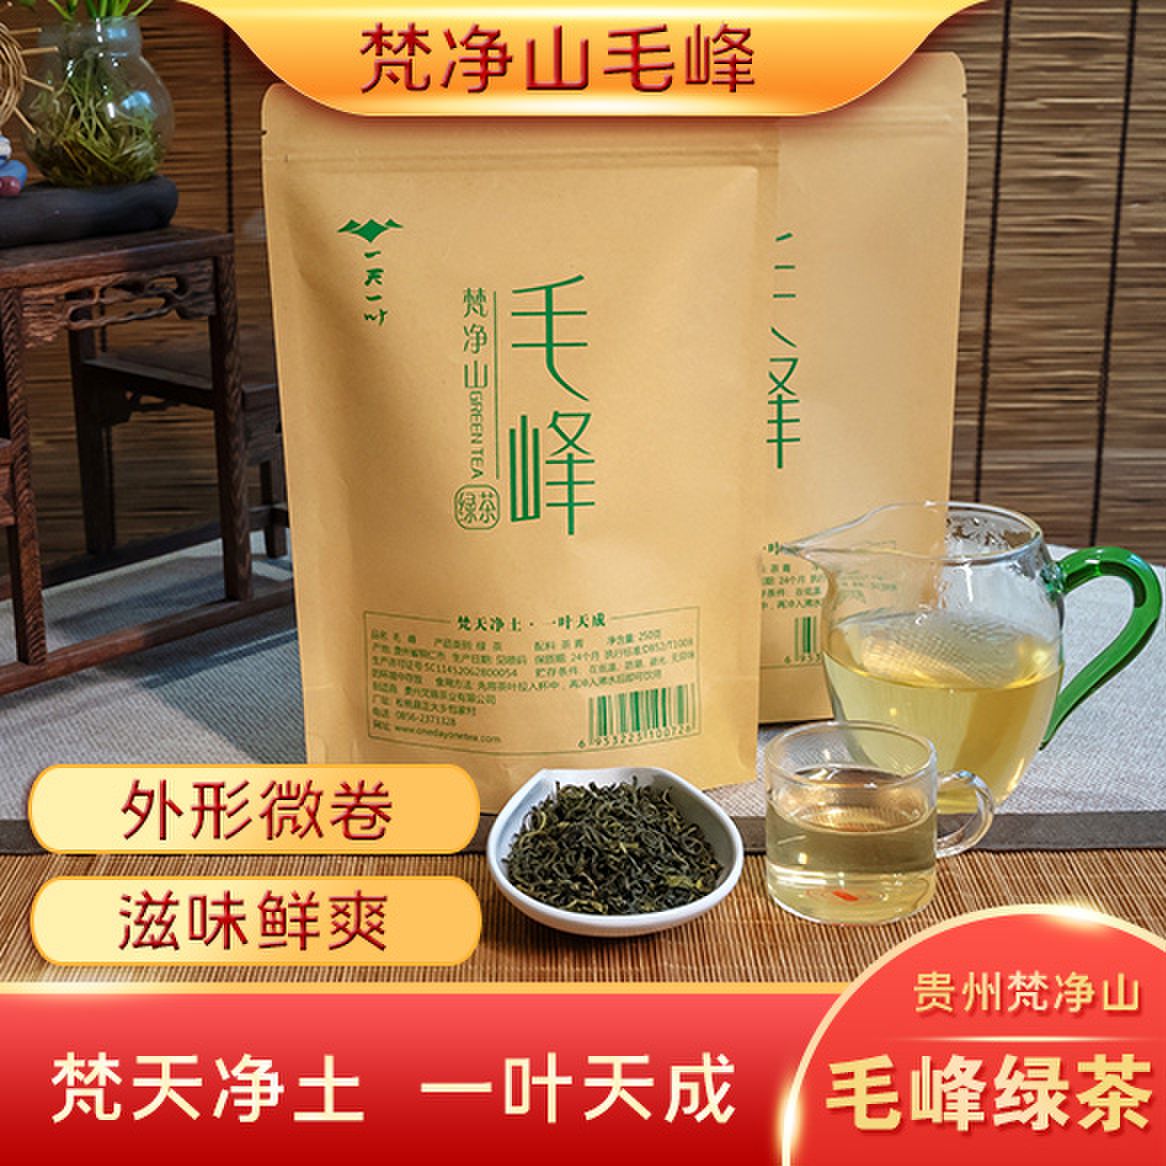 贵州梵青茶叶 绿茶 净含量250g 传统手工制作